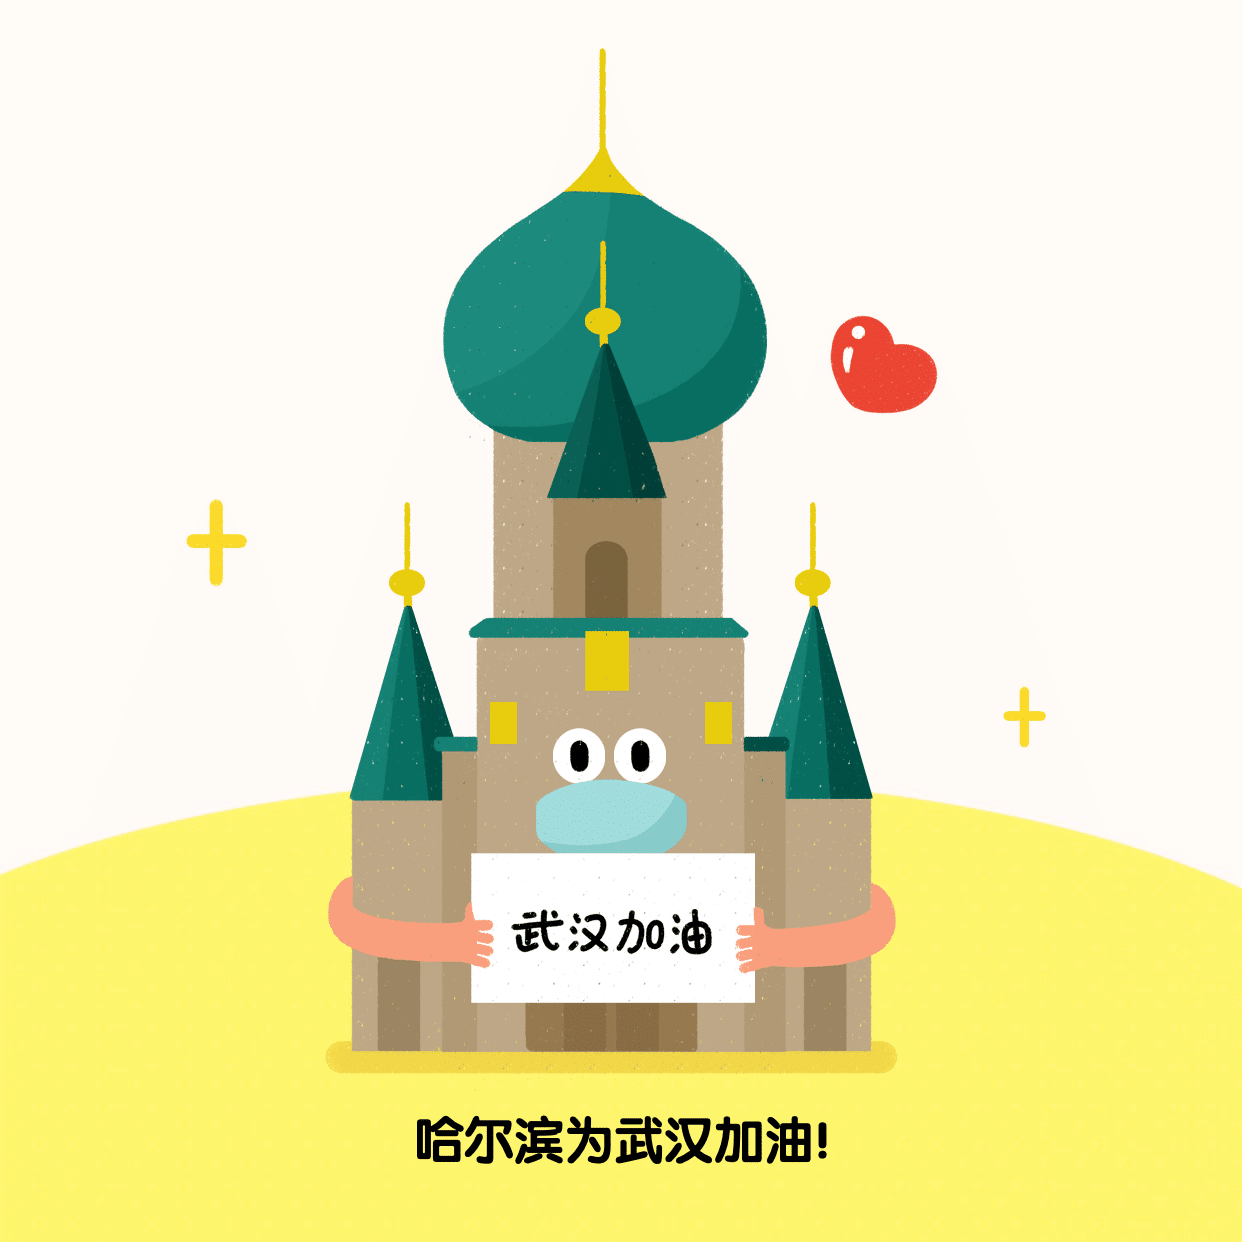 哈尔滨为武汉加油肺炎疫情方形海报预览效果